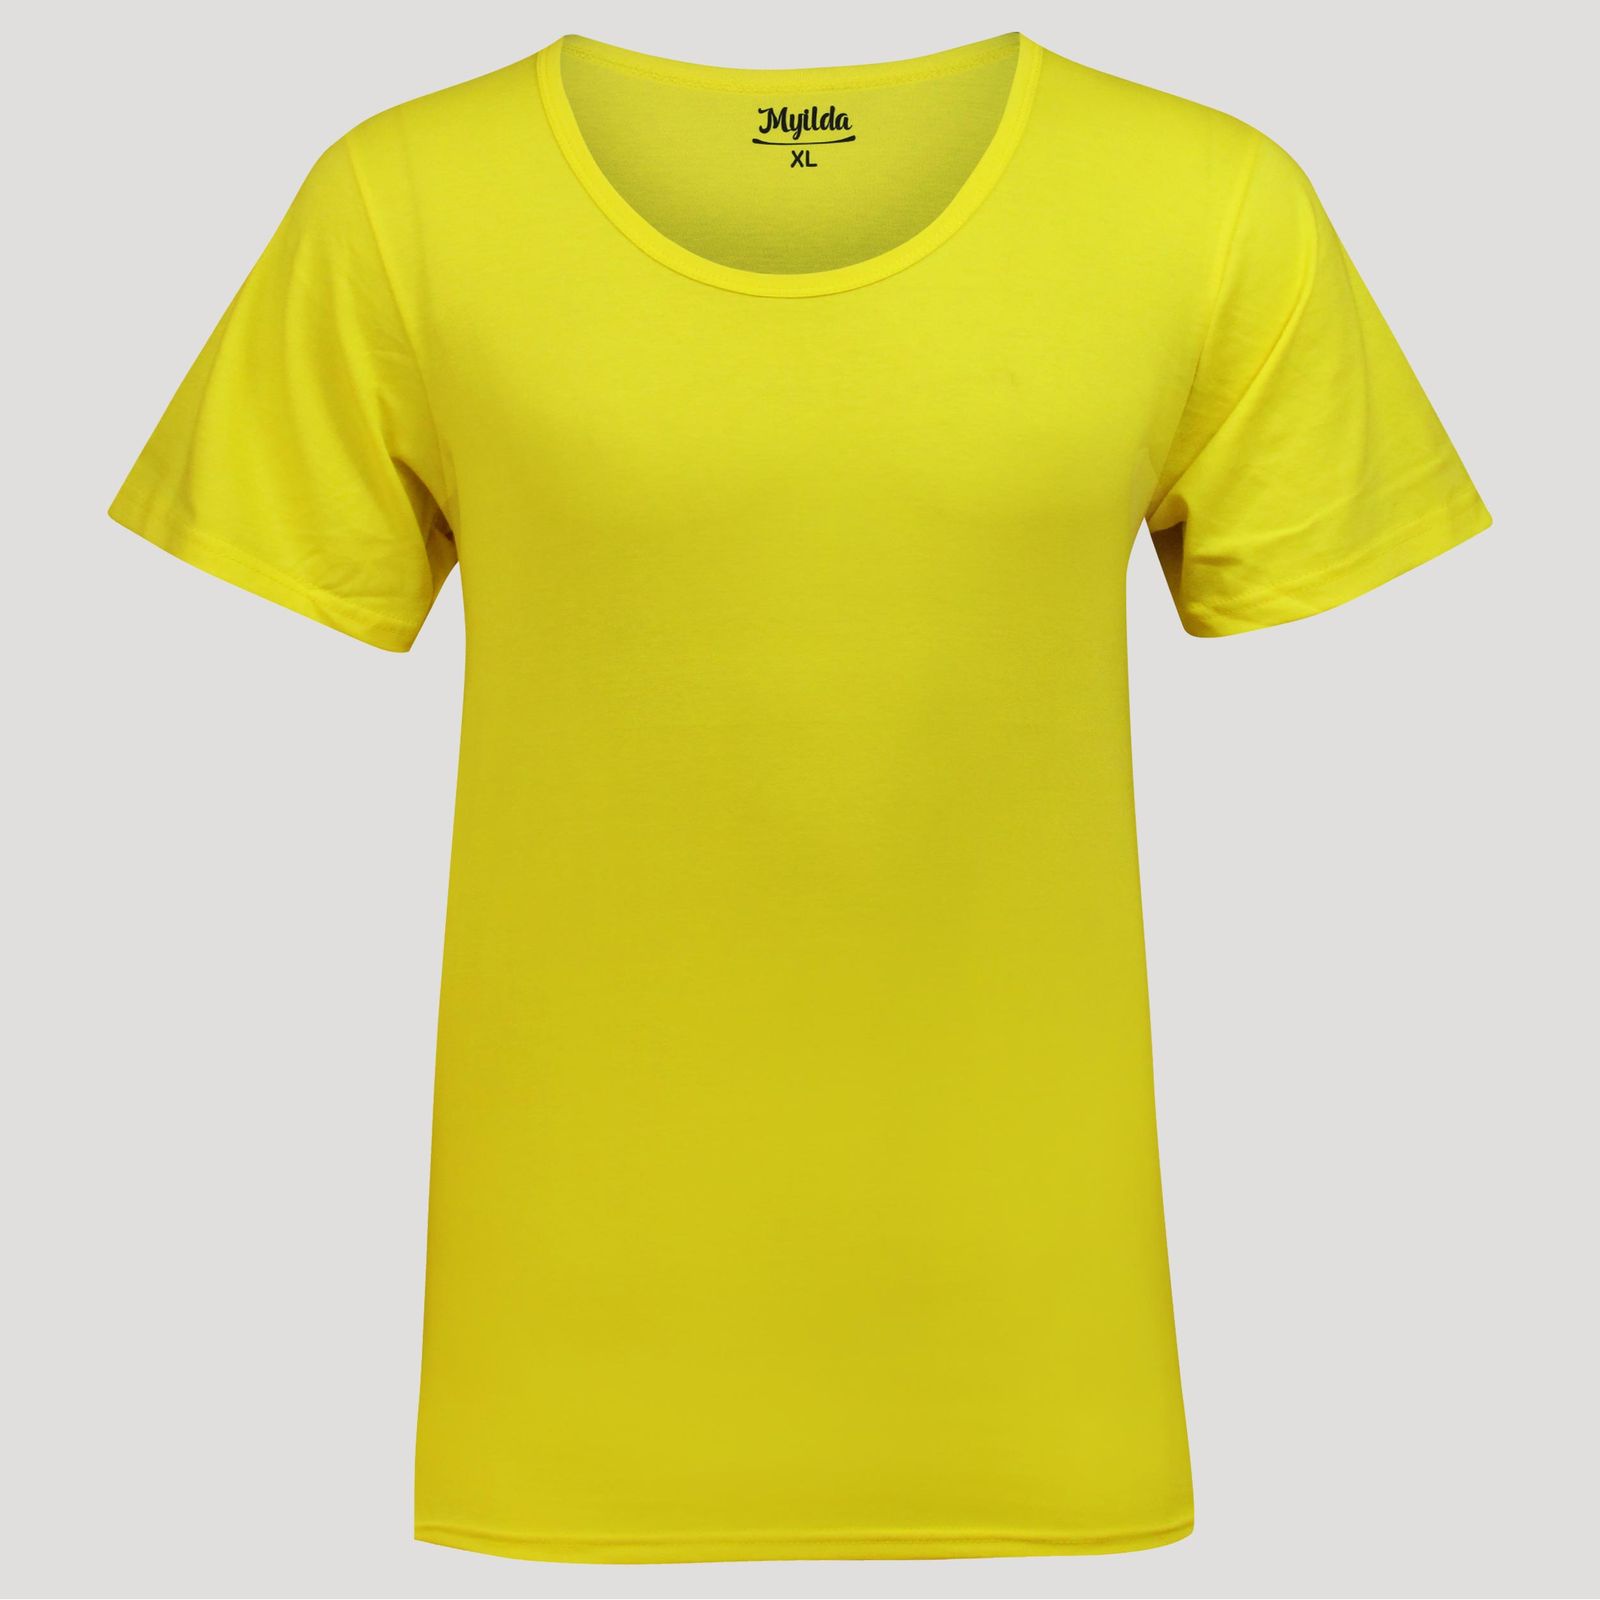 زیرپوش آستین دار مردانه ماییلدا مدل پنبه ای کد 4710 رنگ زرد -  - 2